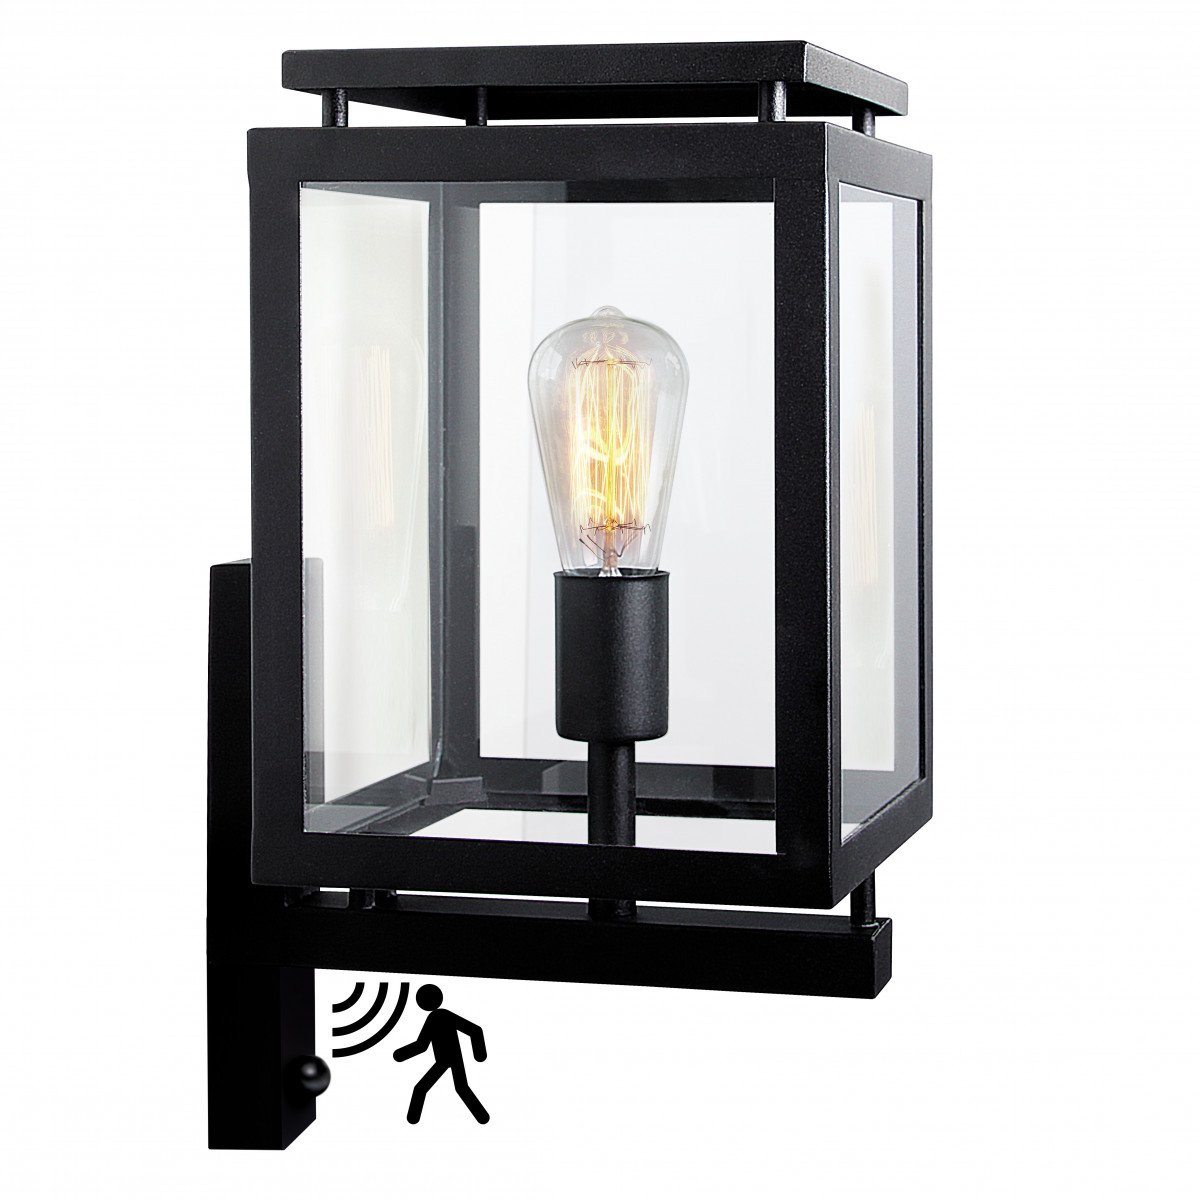 Lampe d'extérieur noire De Vecht avec capteur de mouvement, éclairage moderne,  applique murale montante 